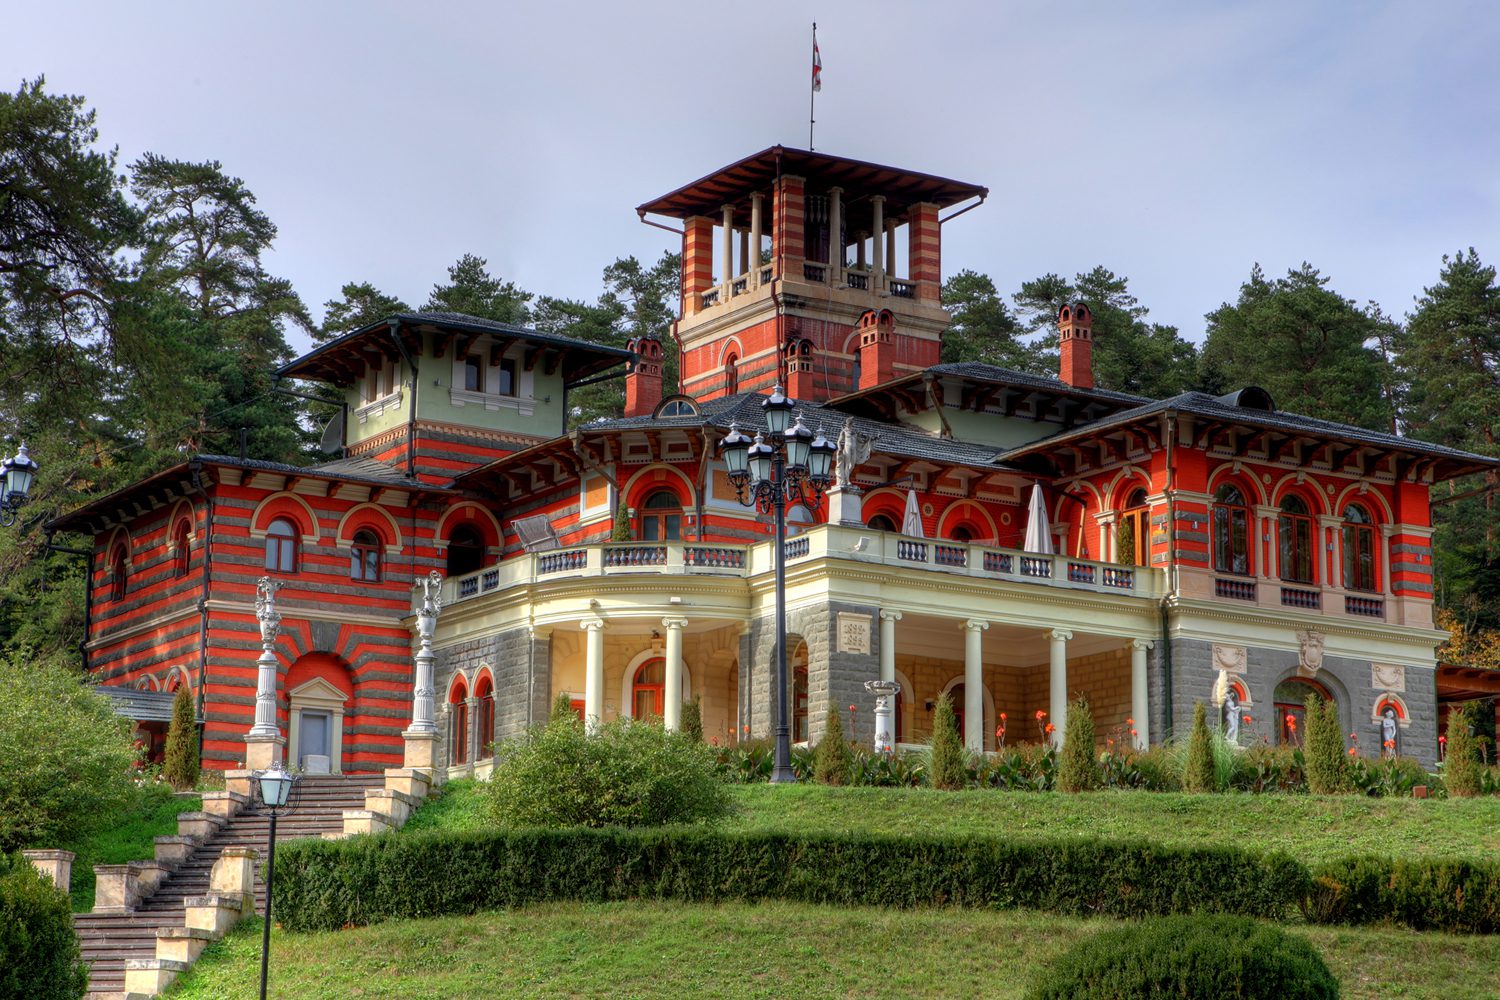 Romanovs’ Palace, Borjomi, Georgia